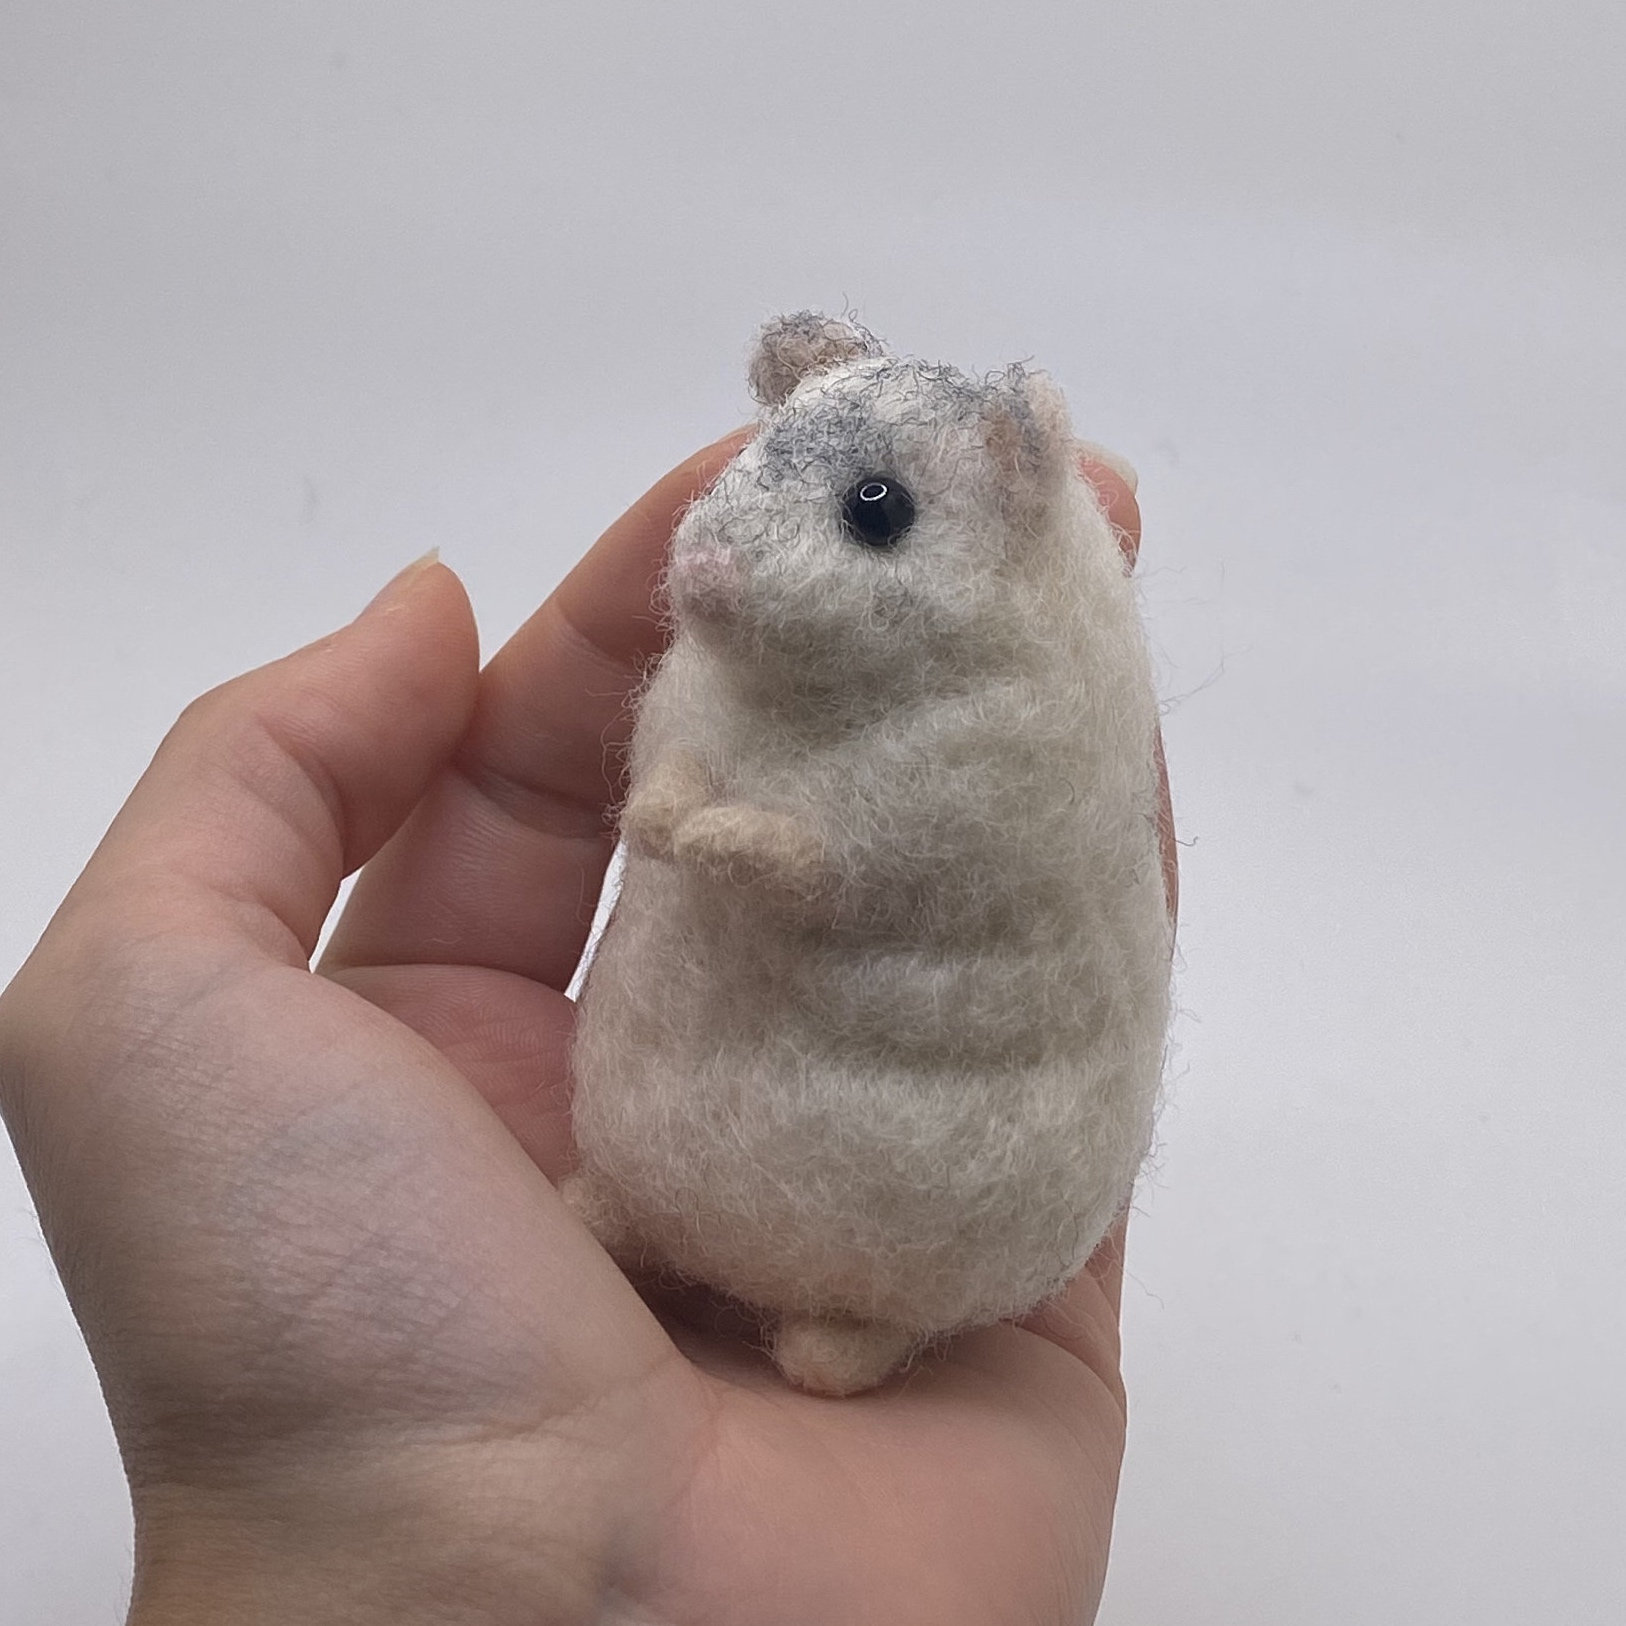 Aiguille feutre blanc hamster nain hybride minuscule réaliste